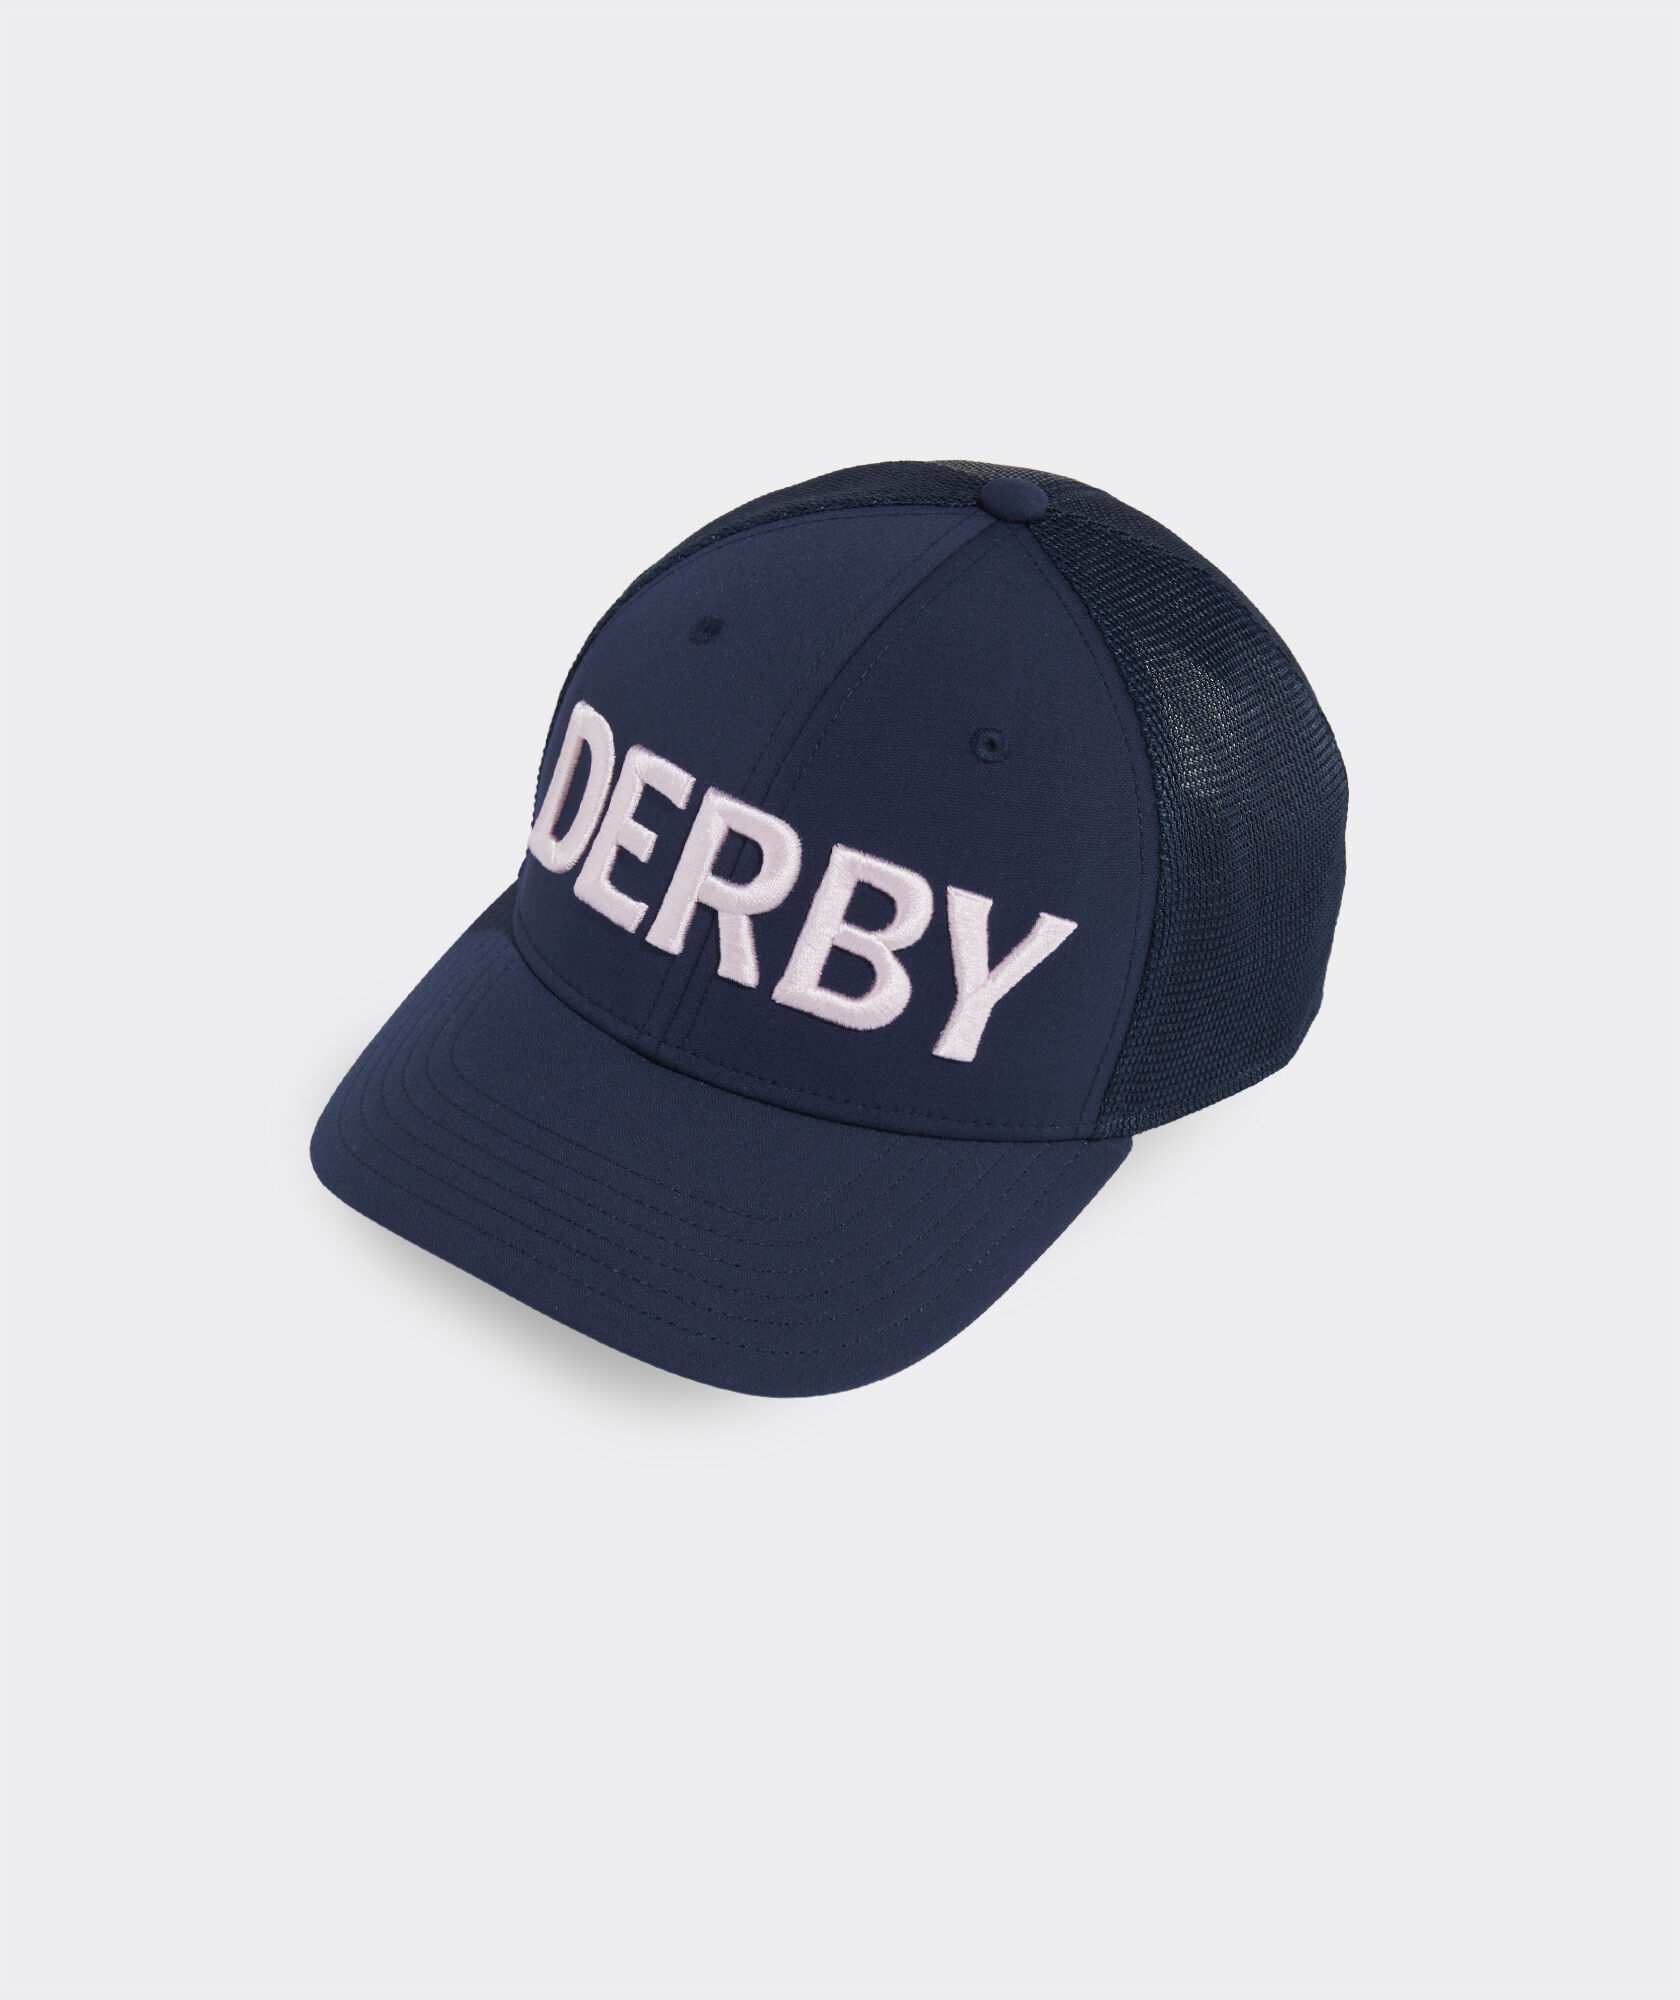 Kentucky Derby Text Trucker Hat